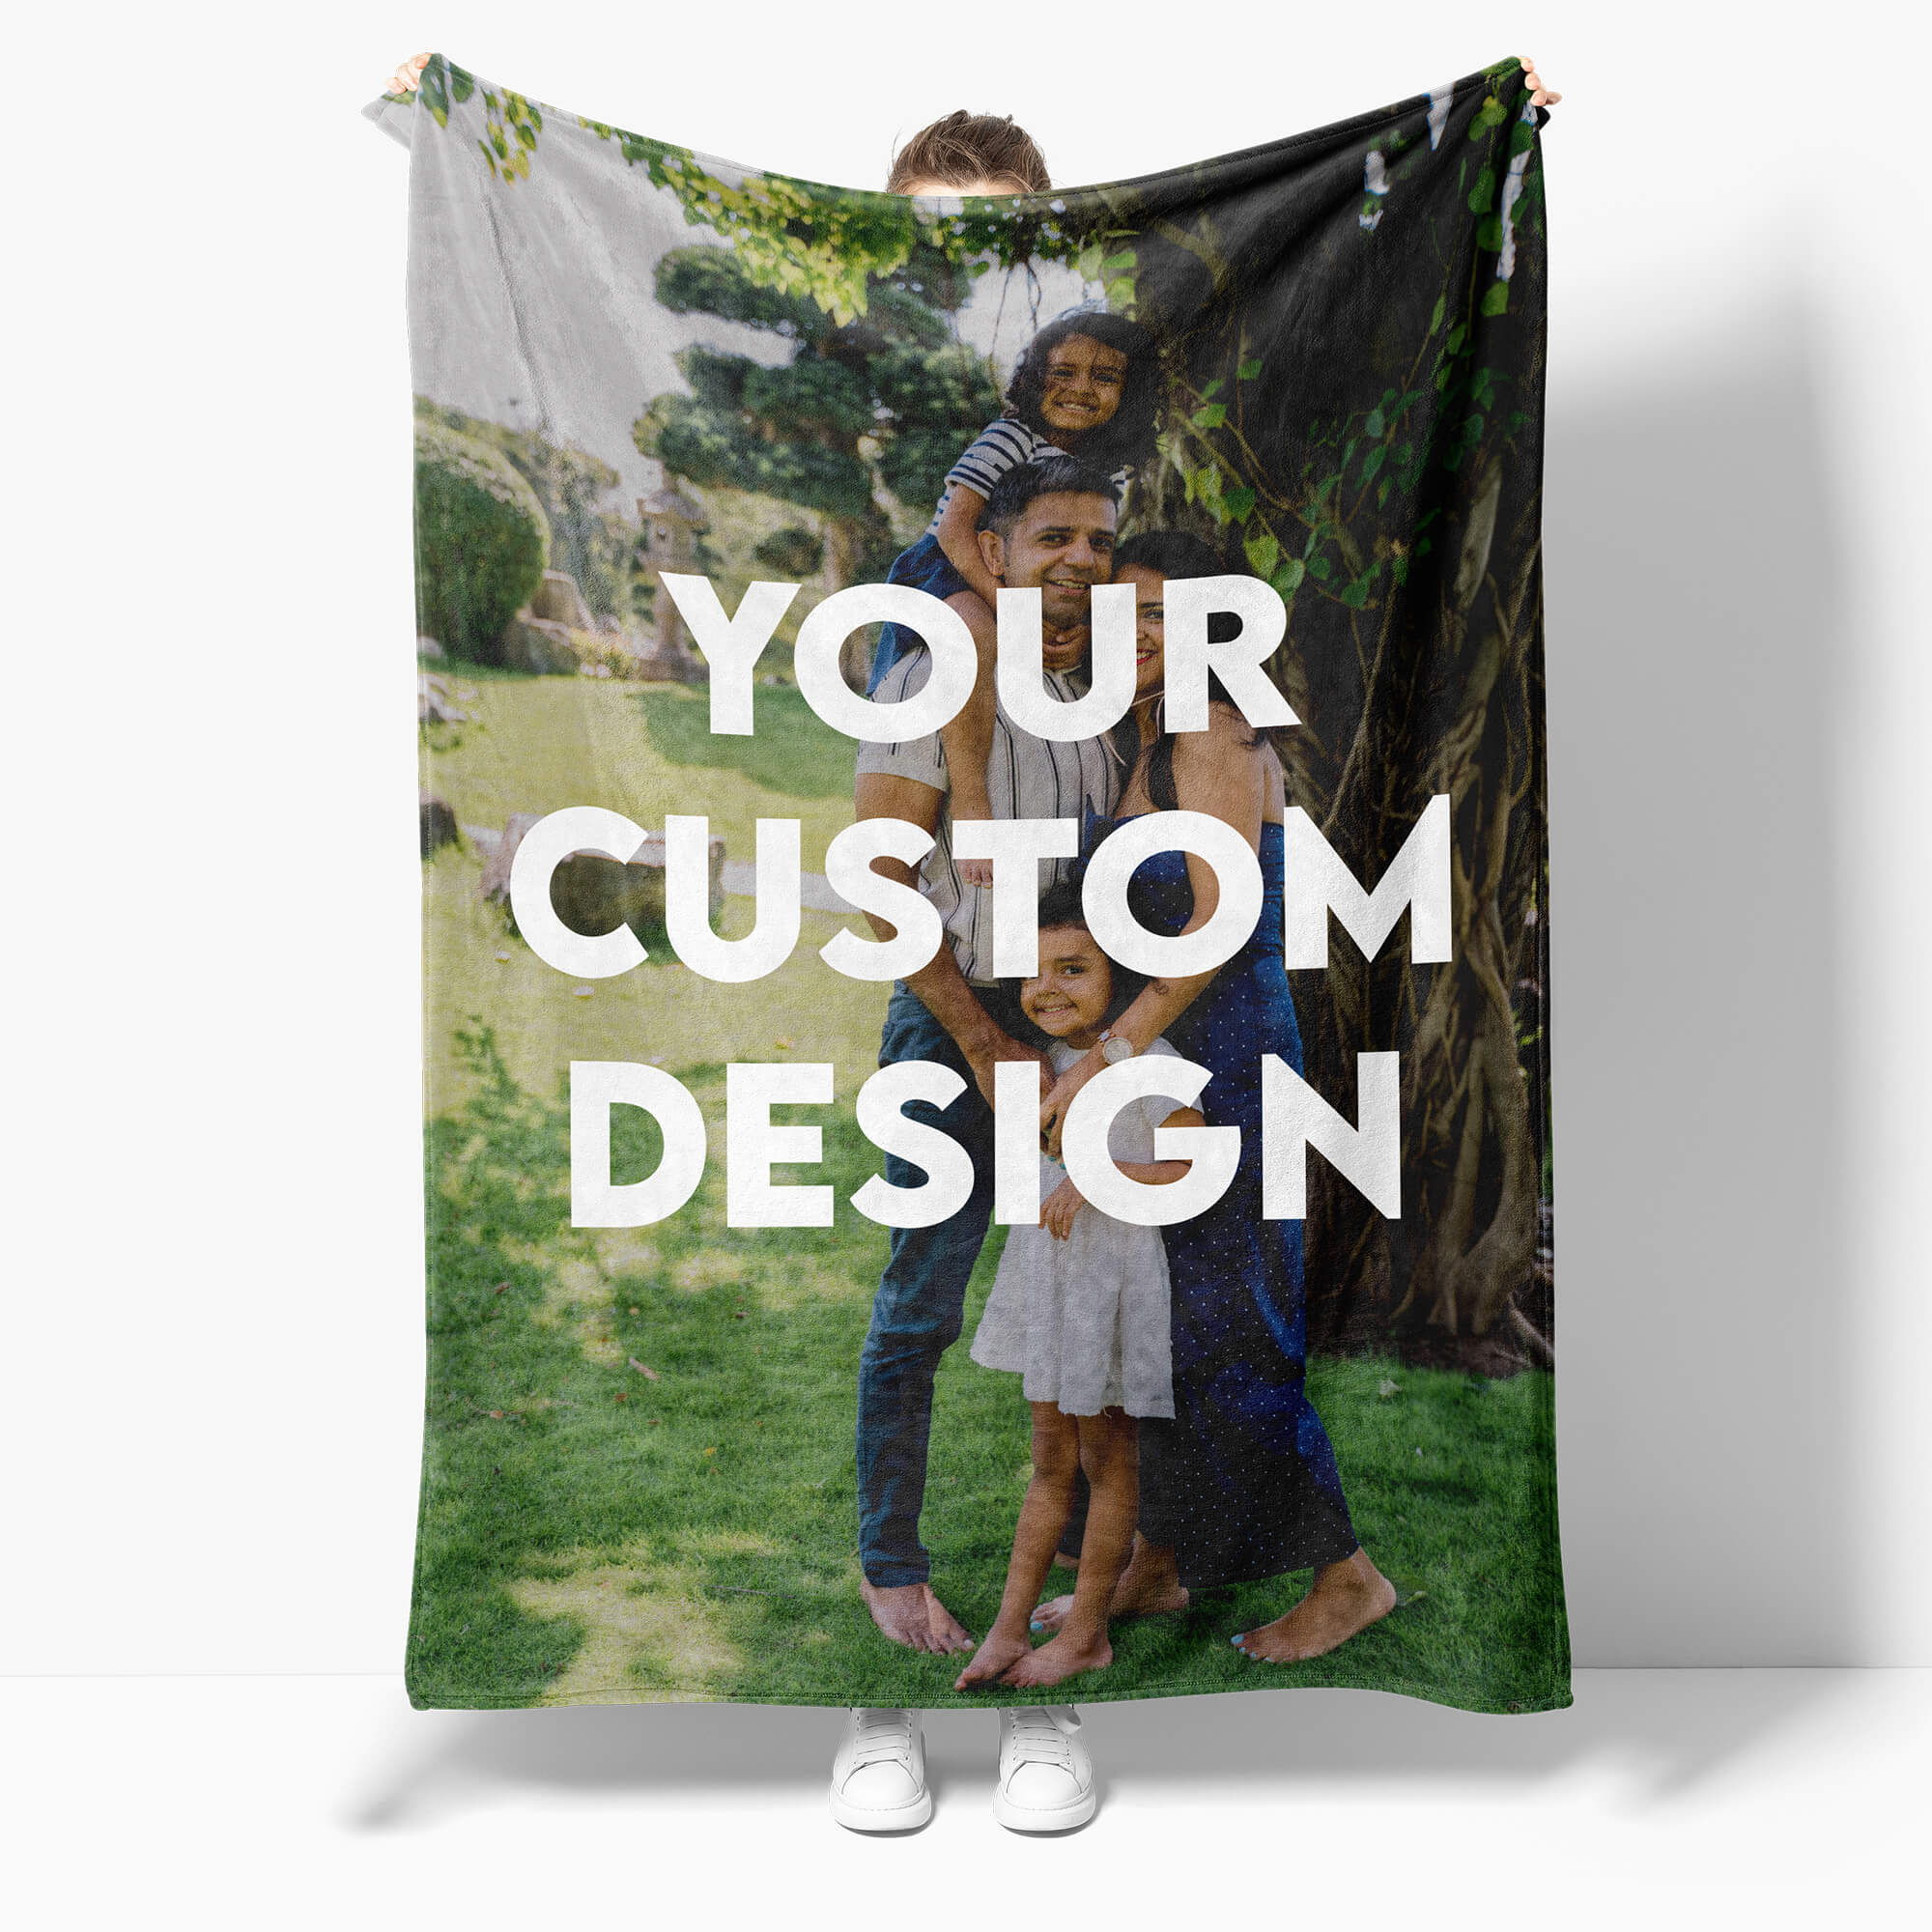 Custom Blanket